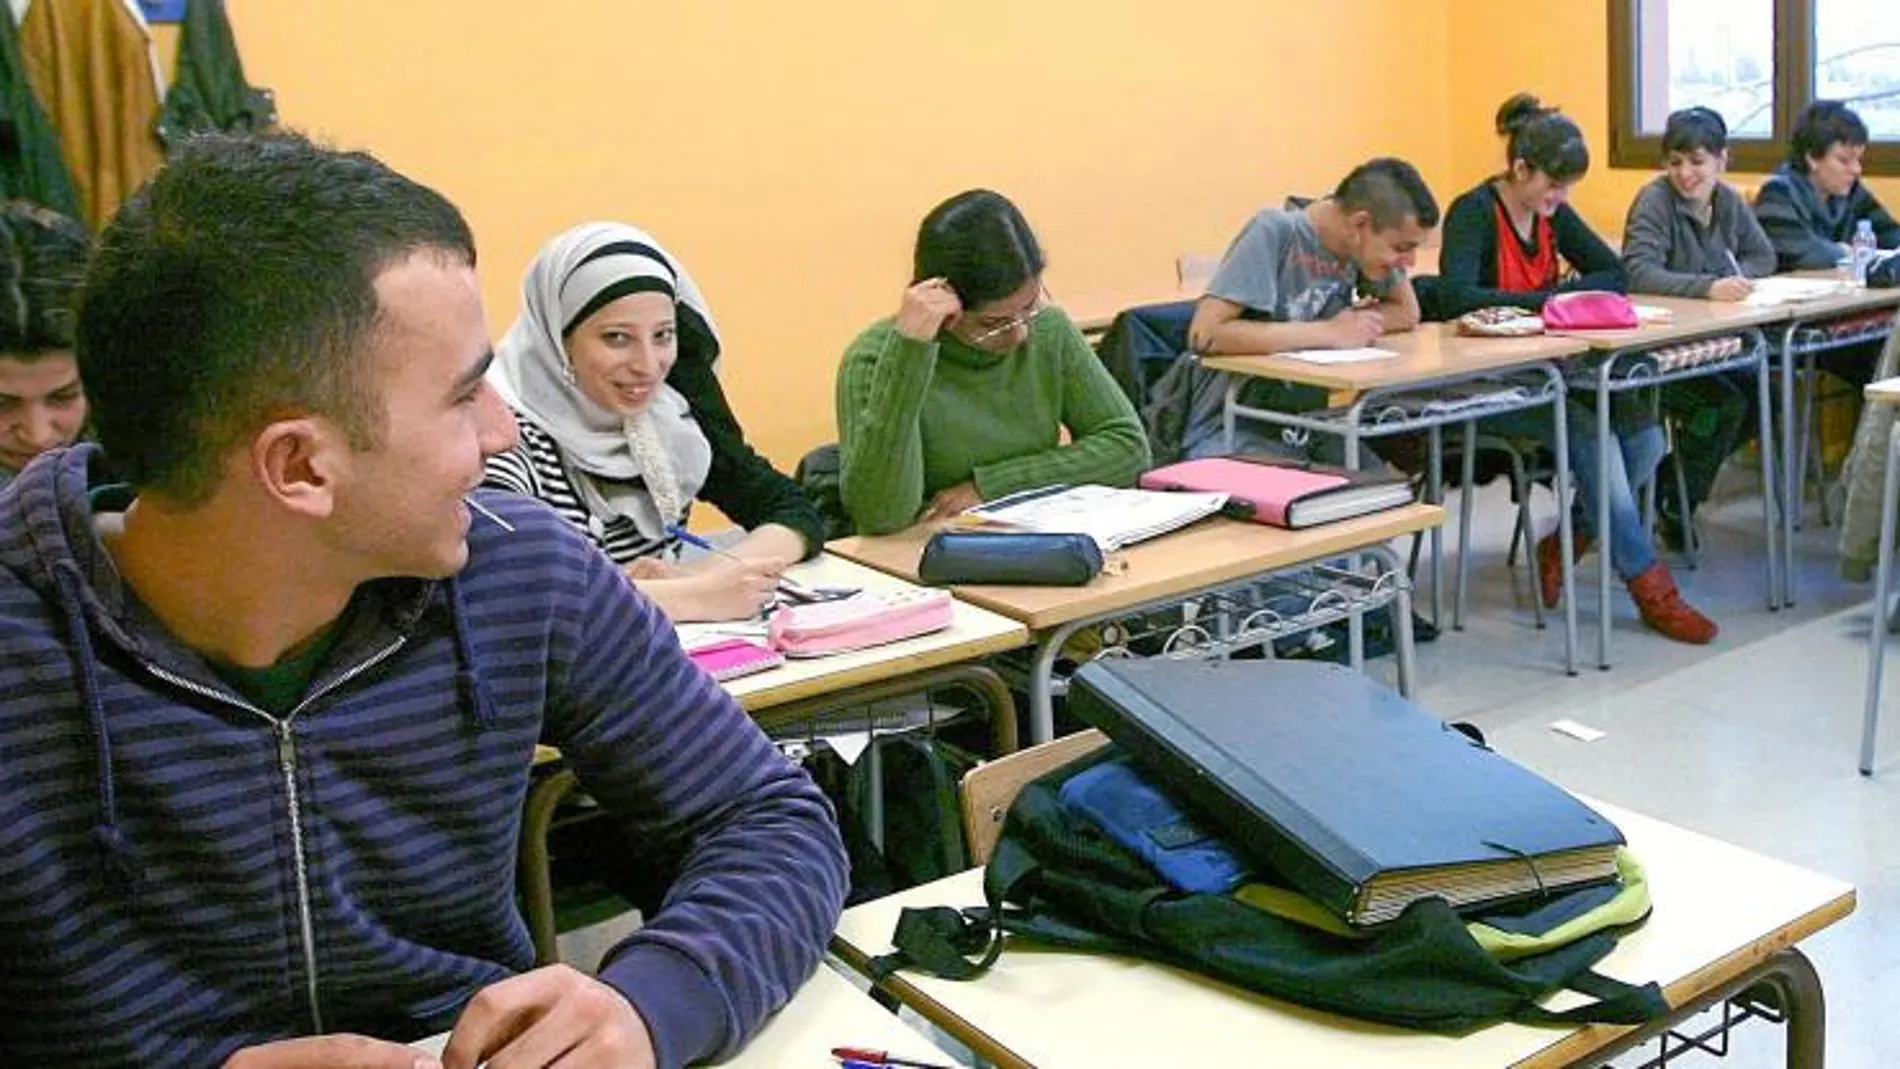 La presencia de alumnos extranjeros es cada vez más frecuente en las aulas catalanas. en la imagen, una escuela de Vic